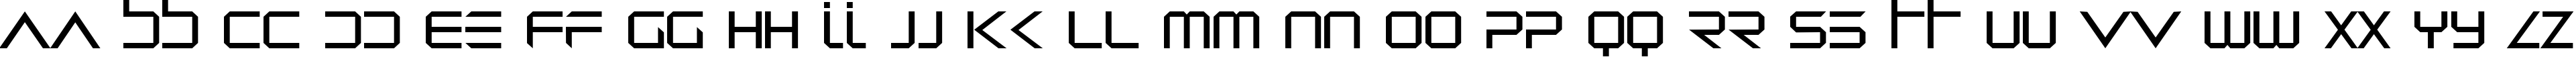 Пример написания английского алфавита шрифтом Dredwerkz